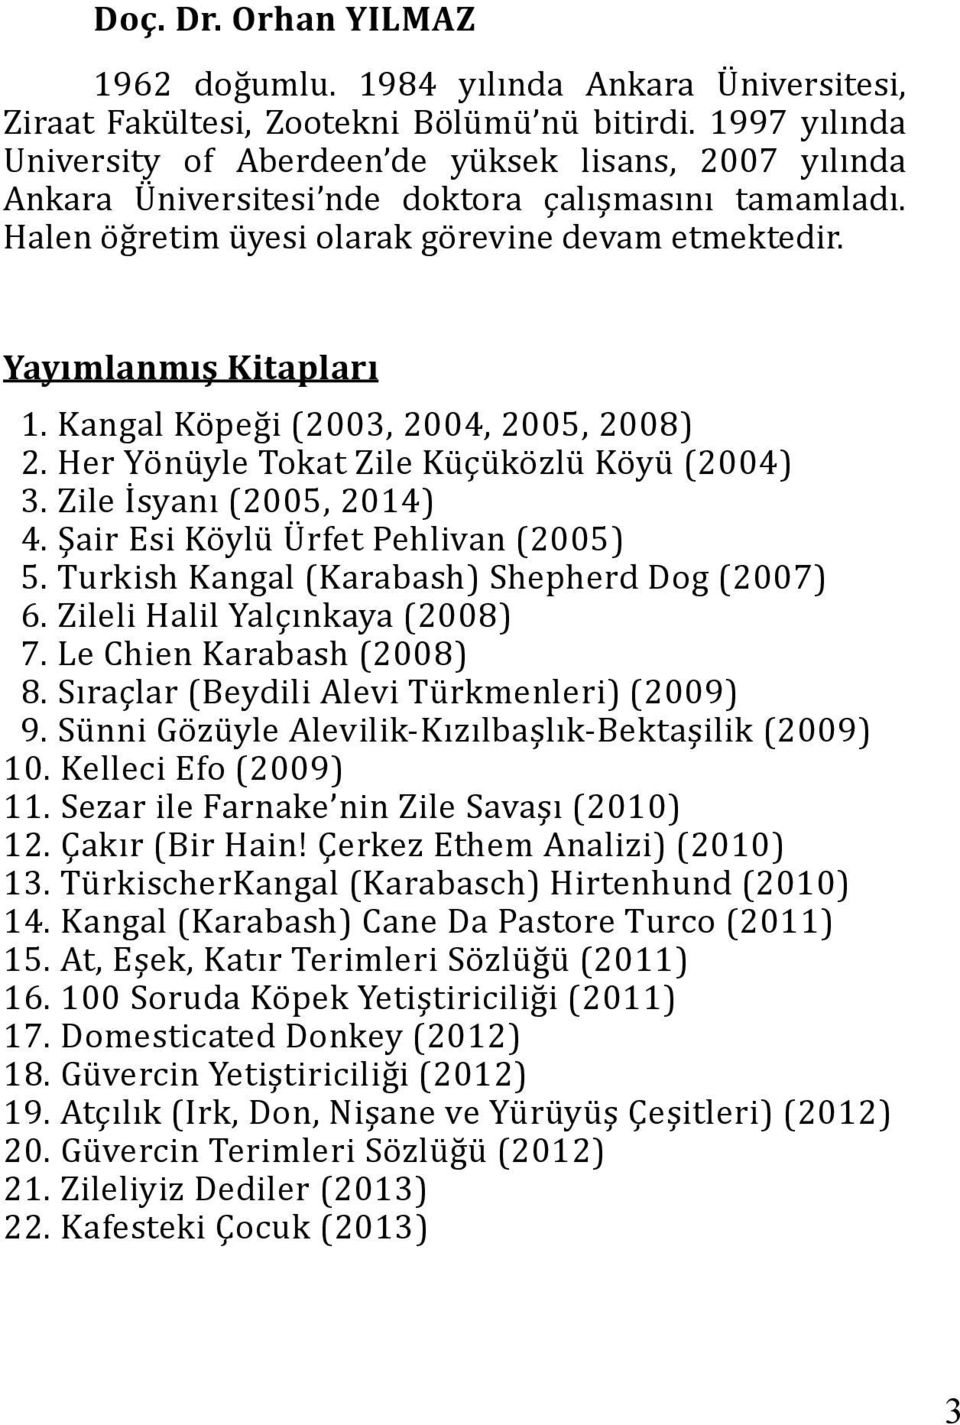 Kangal Köpeği (2003, 2004, 2005, 2008) 2. Her Yönüyle Tokat Zile Küçüközlü Köyü (2004) 3. Zile İsyanı (2005, 2014) 4. Şair Esi Köylü Ürfet Pehlivan (2005) 5.